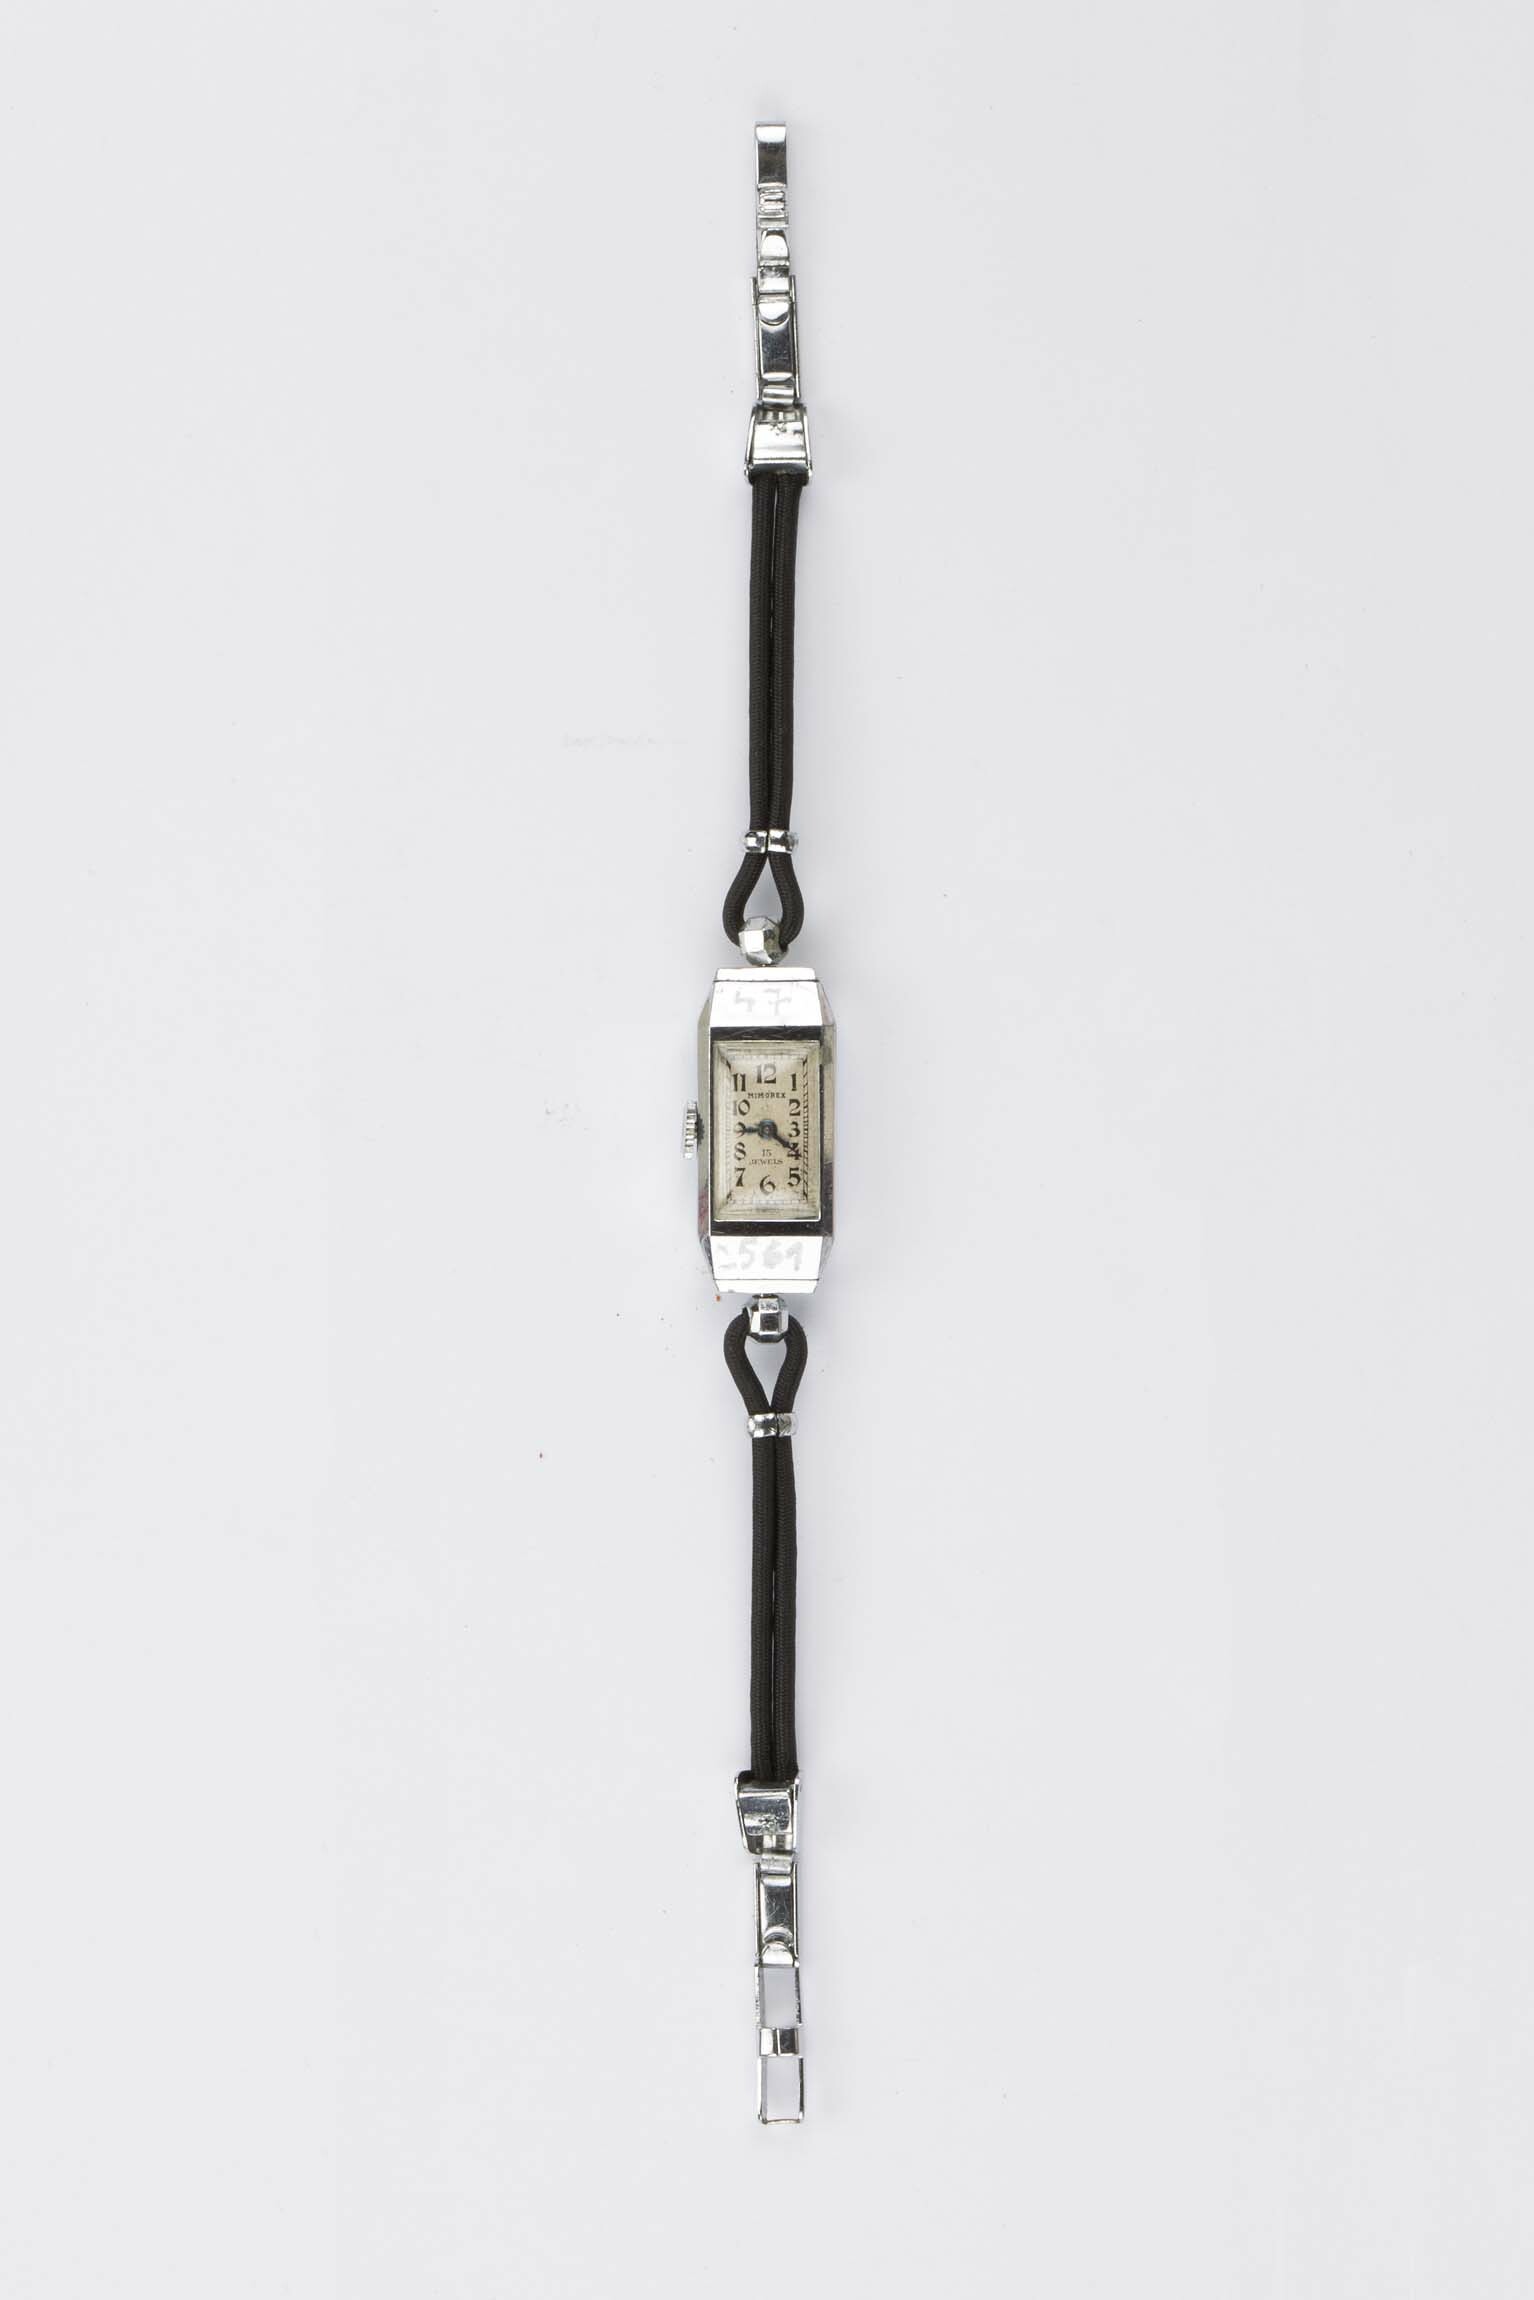 Armbanduhr Mimorex, Mimo, La Chaux-de-Fonds, um 1930 (Deutsches Uhrenmuseum CC BY-SA)